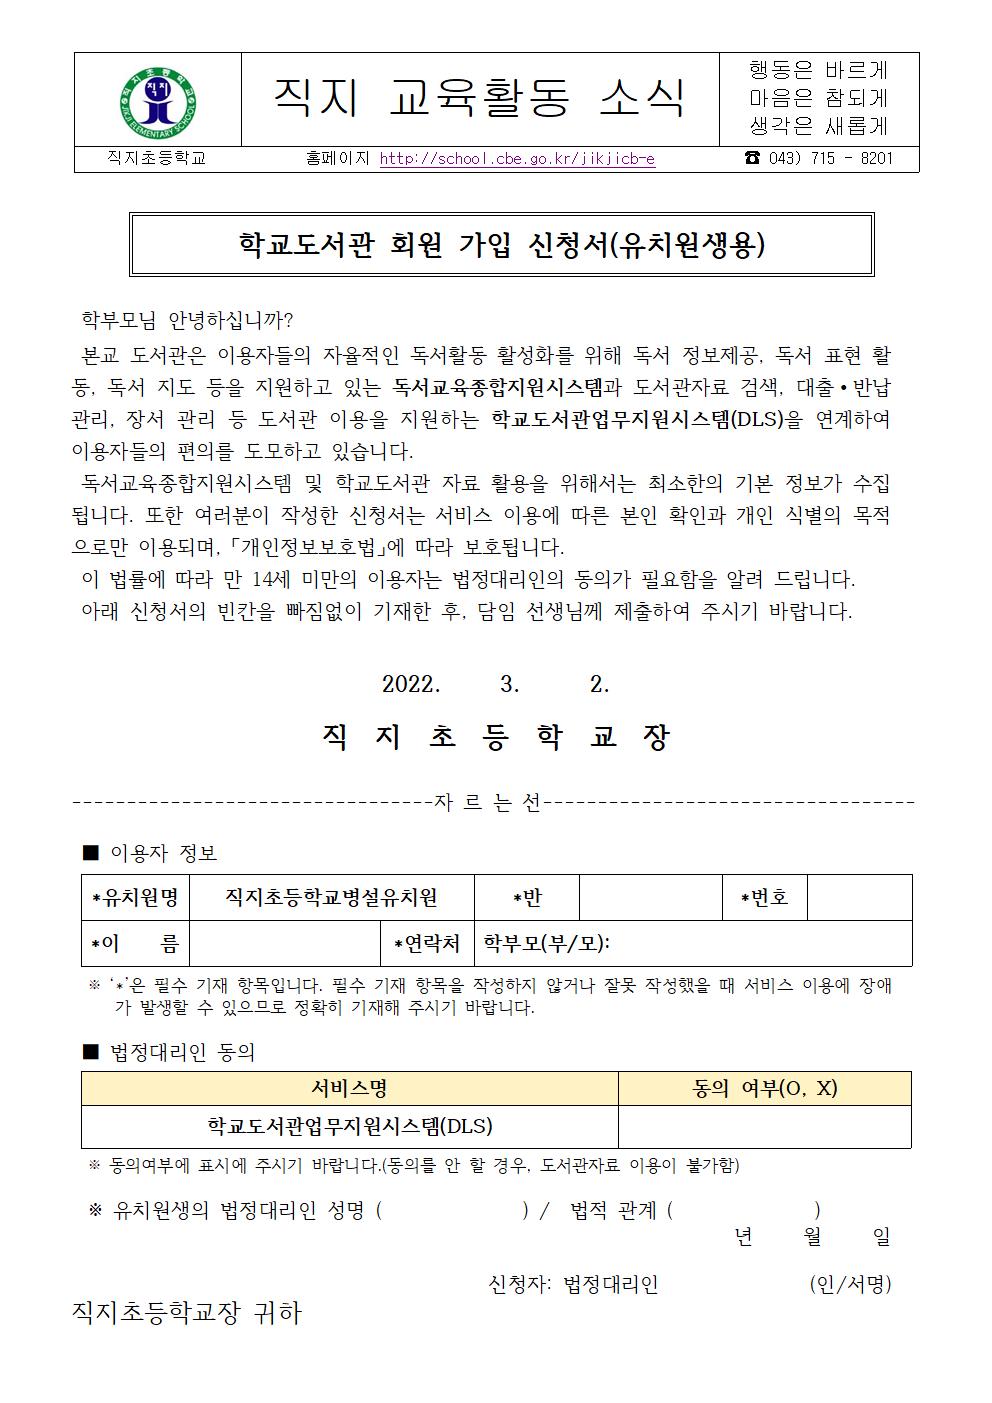 2022학년도 학교도서관 회원 가입 신청서(유치원생용)001